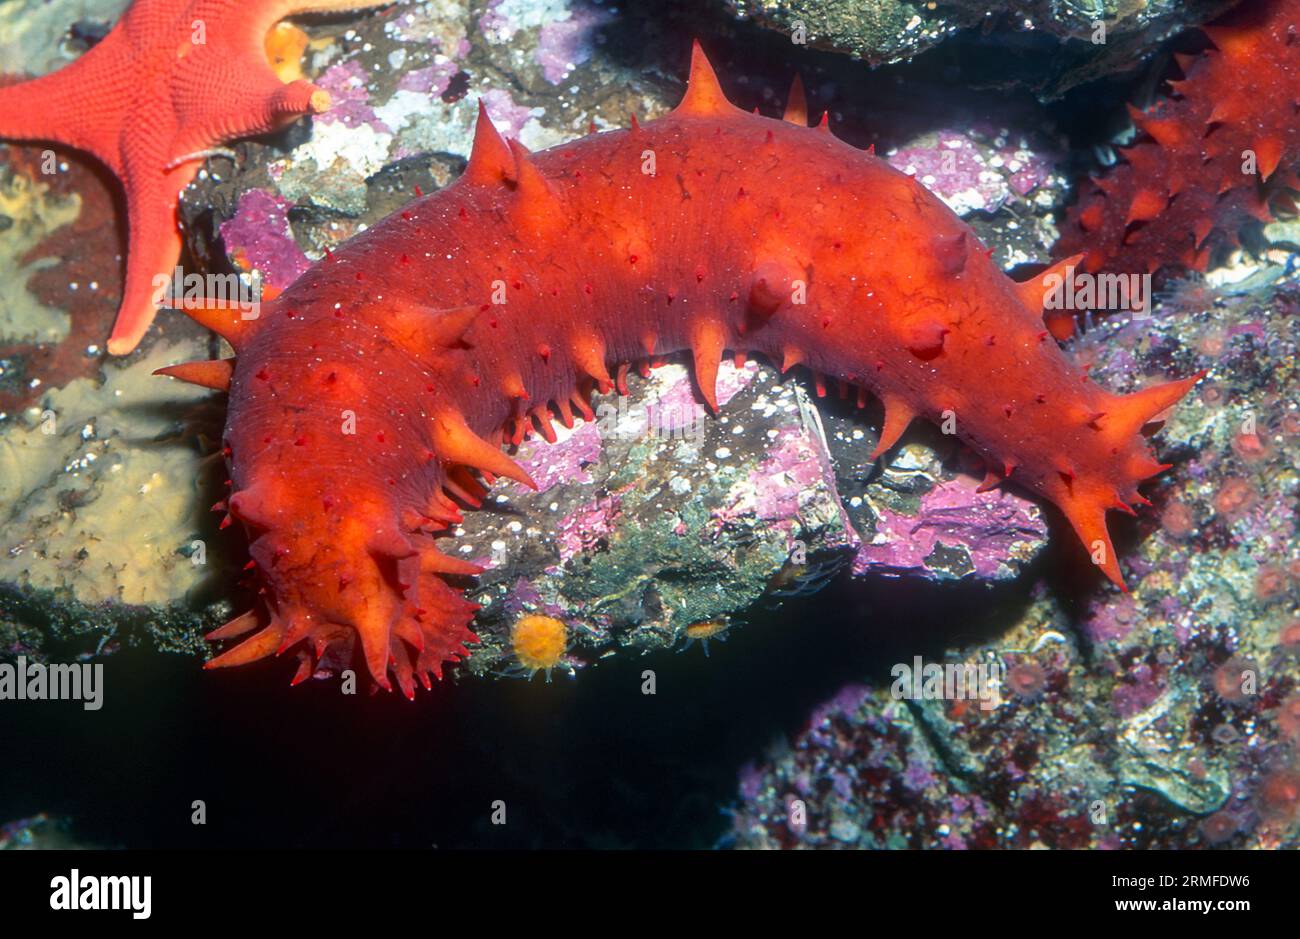 California sea cucumber (Apostichopus californicus). Aquariumphoto. Stock Photo